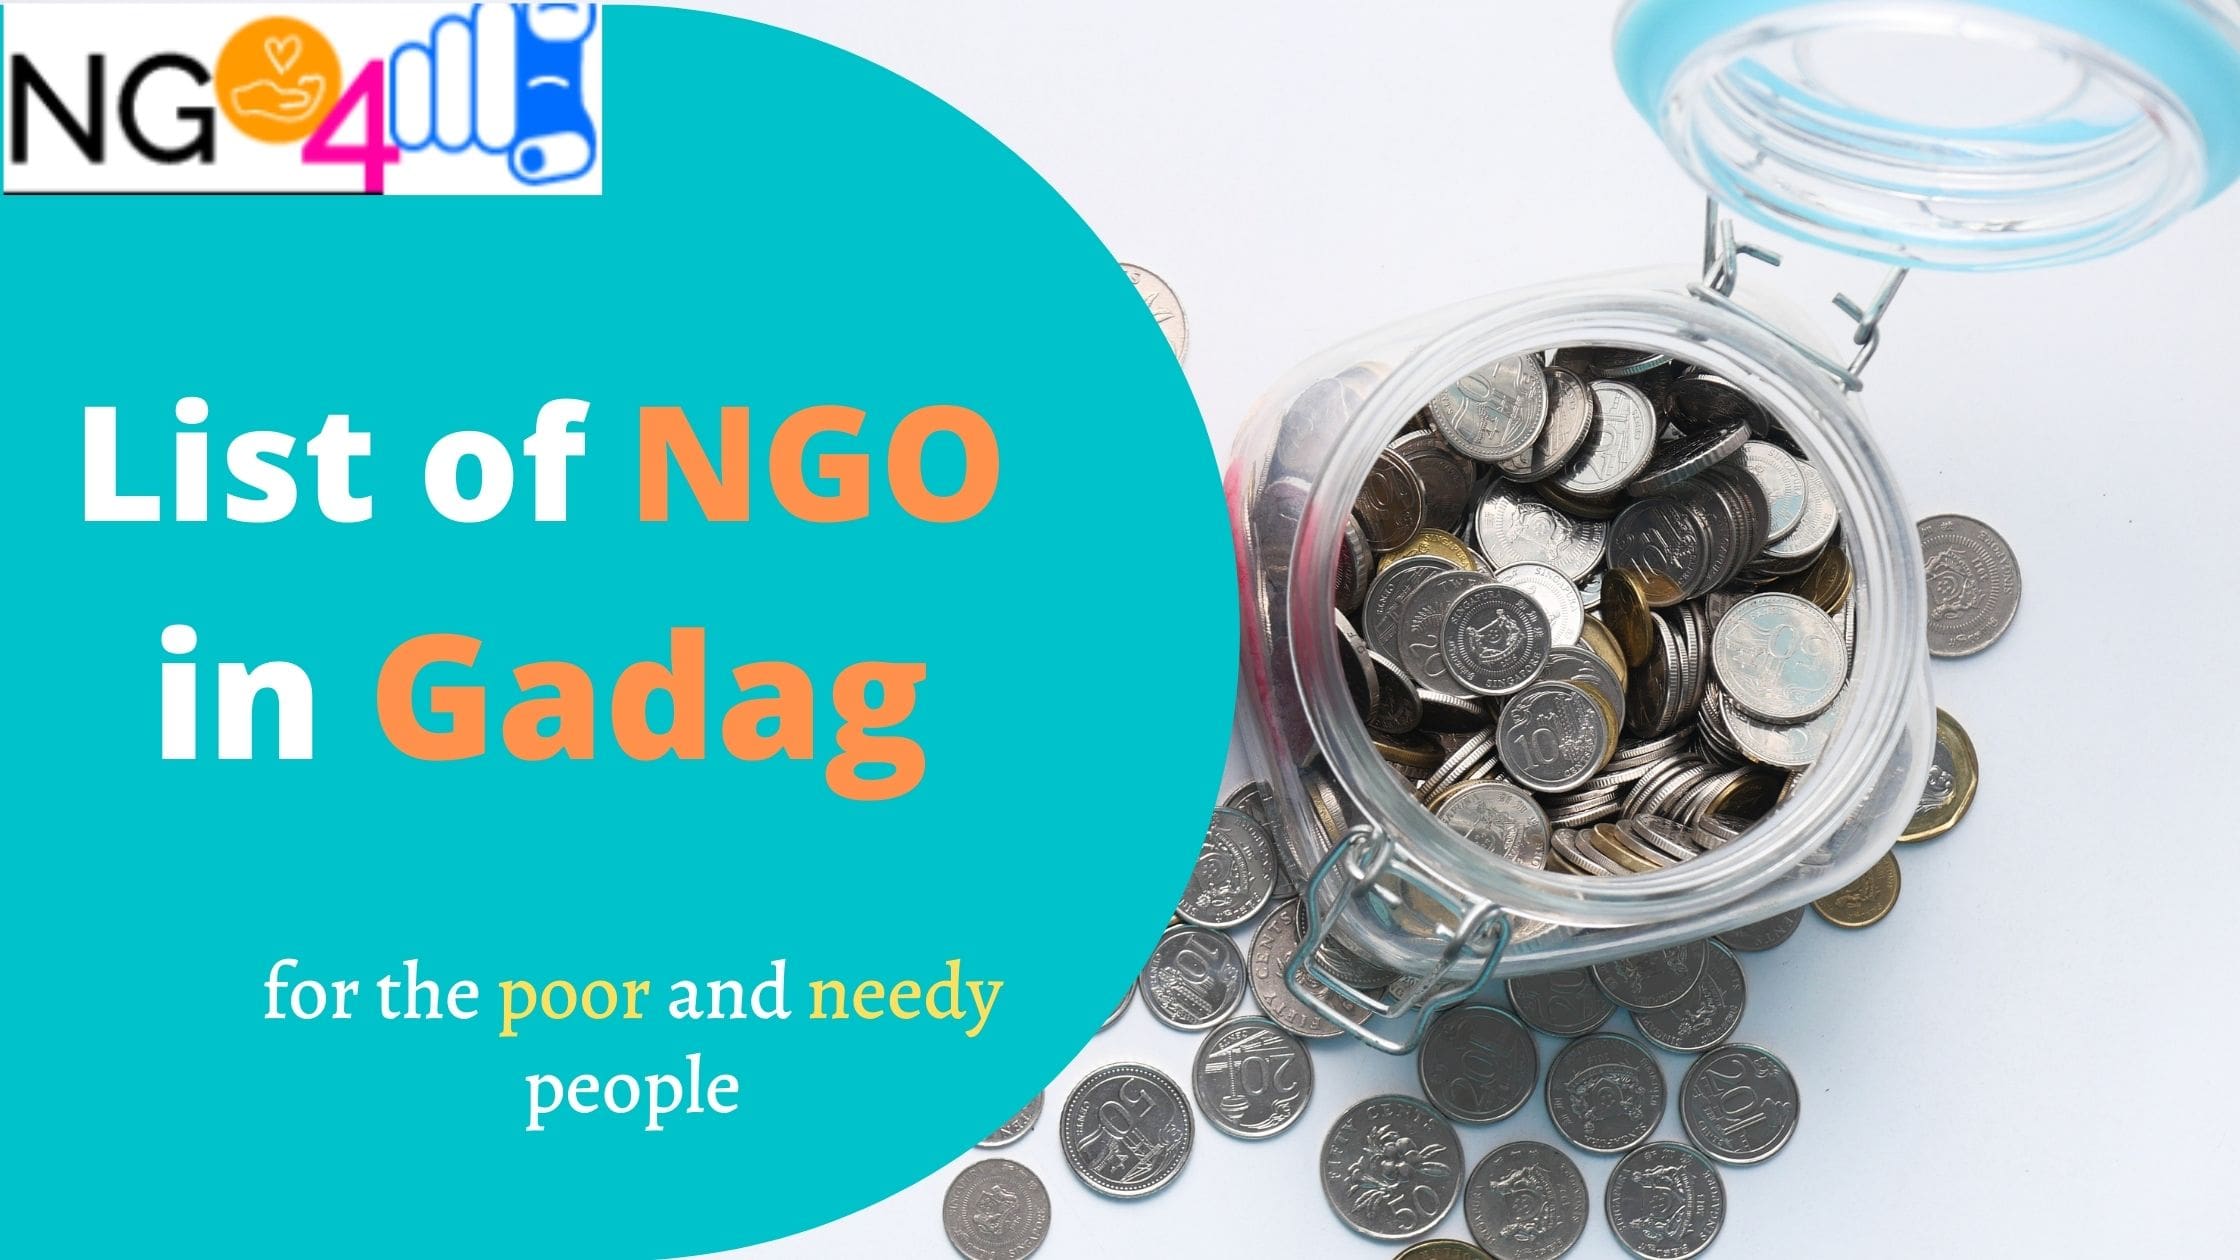 NGOs in Gadag